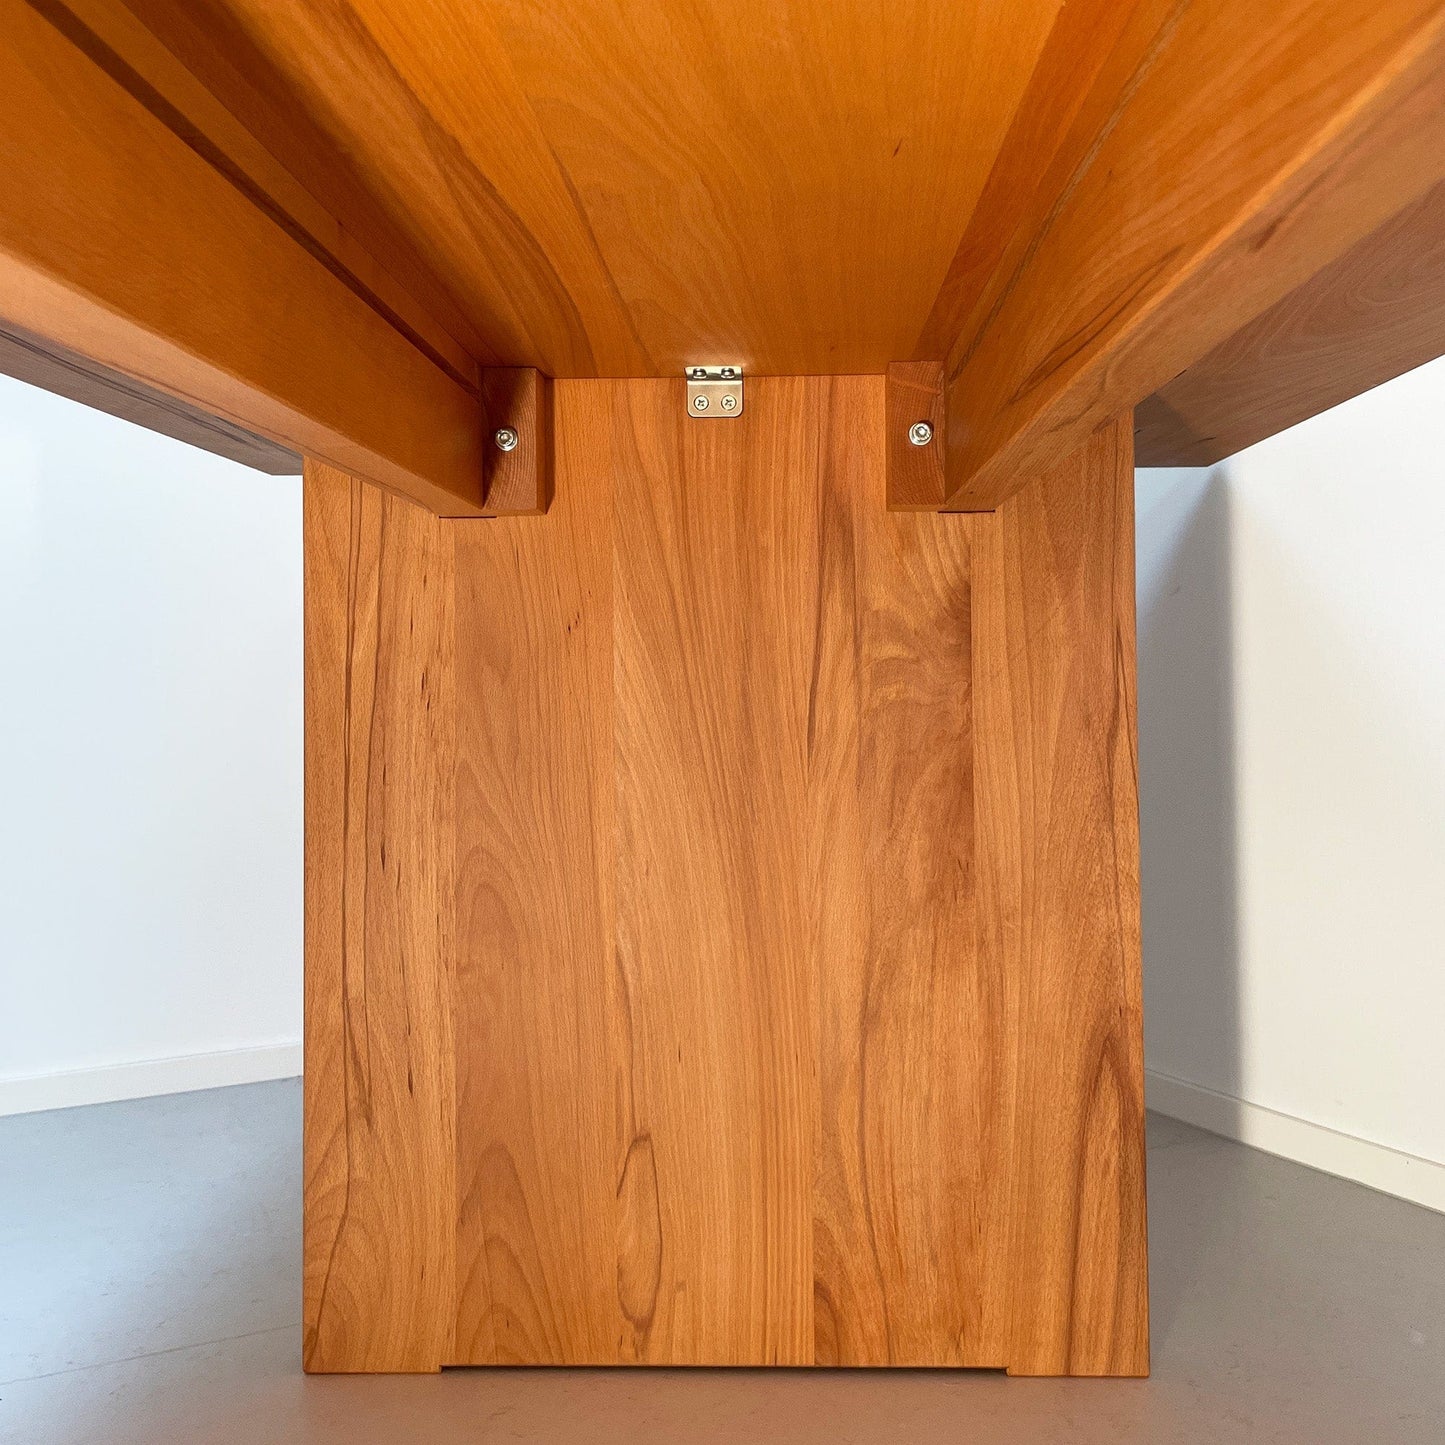 ZEN/10 Massivholztisch der Holzmanufaktur. Entwurf von Bottega + Ehrhardt